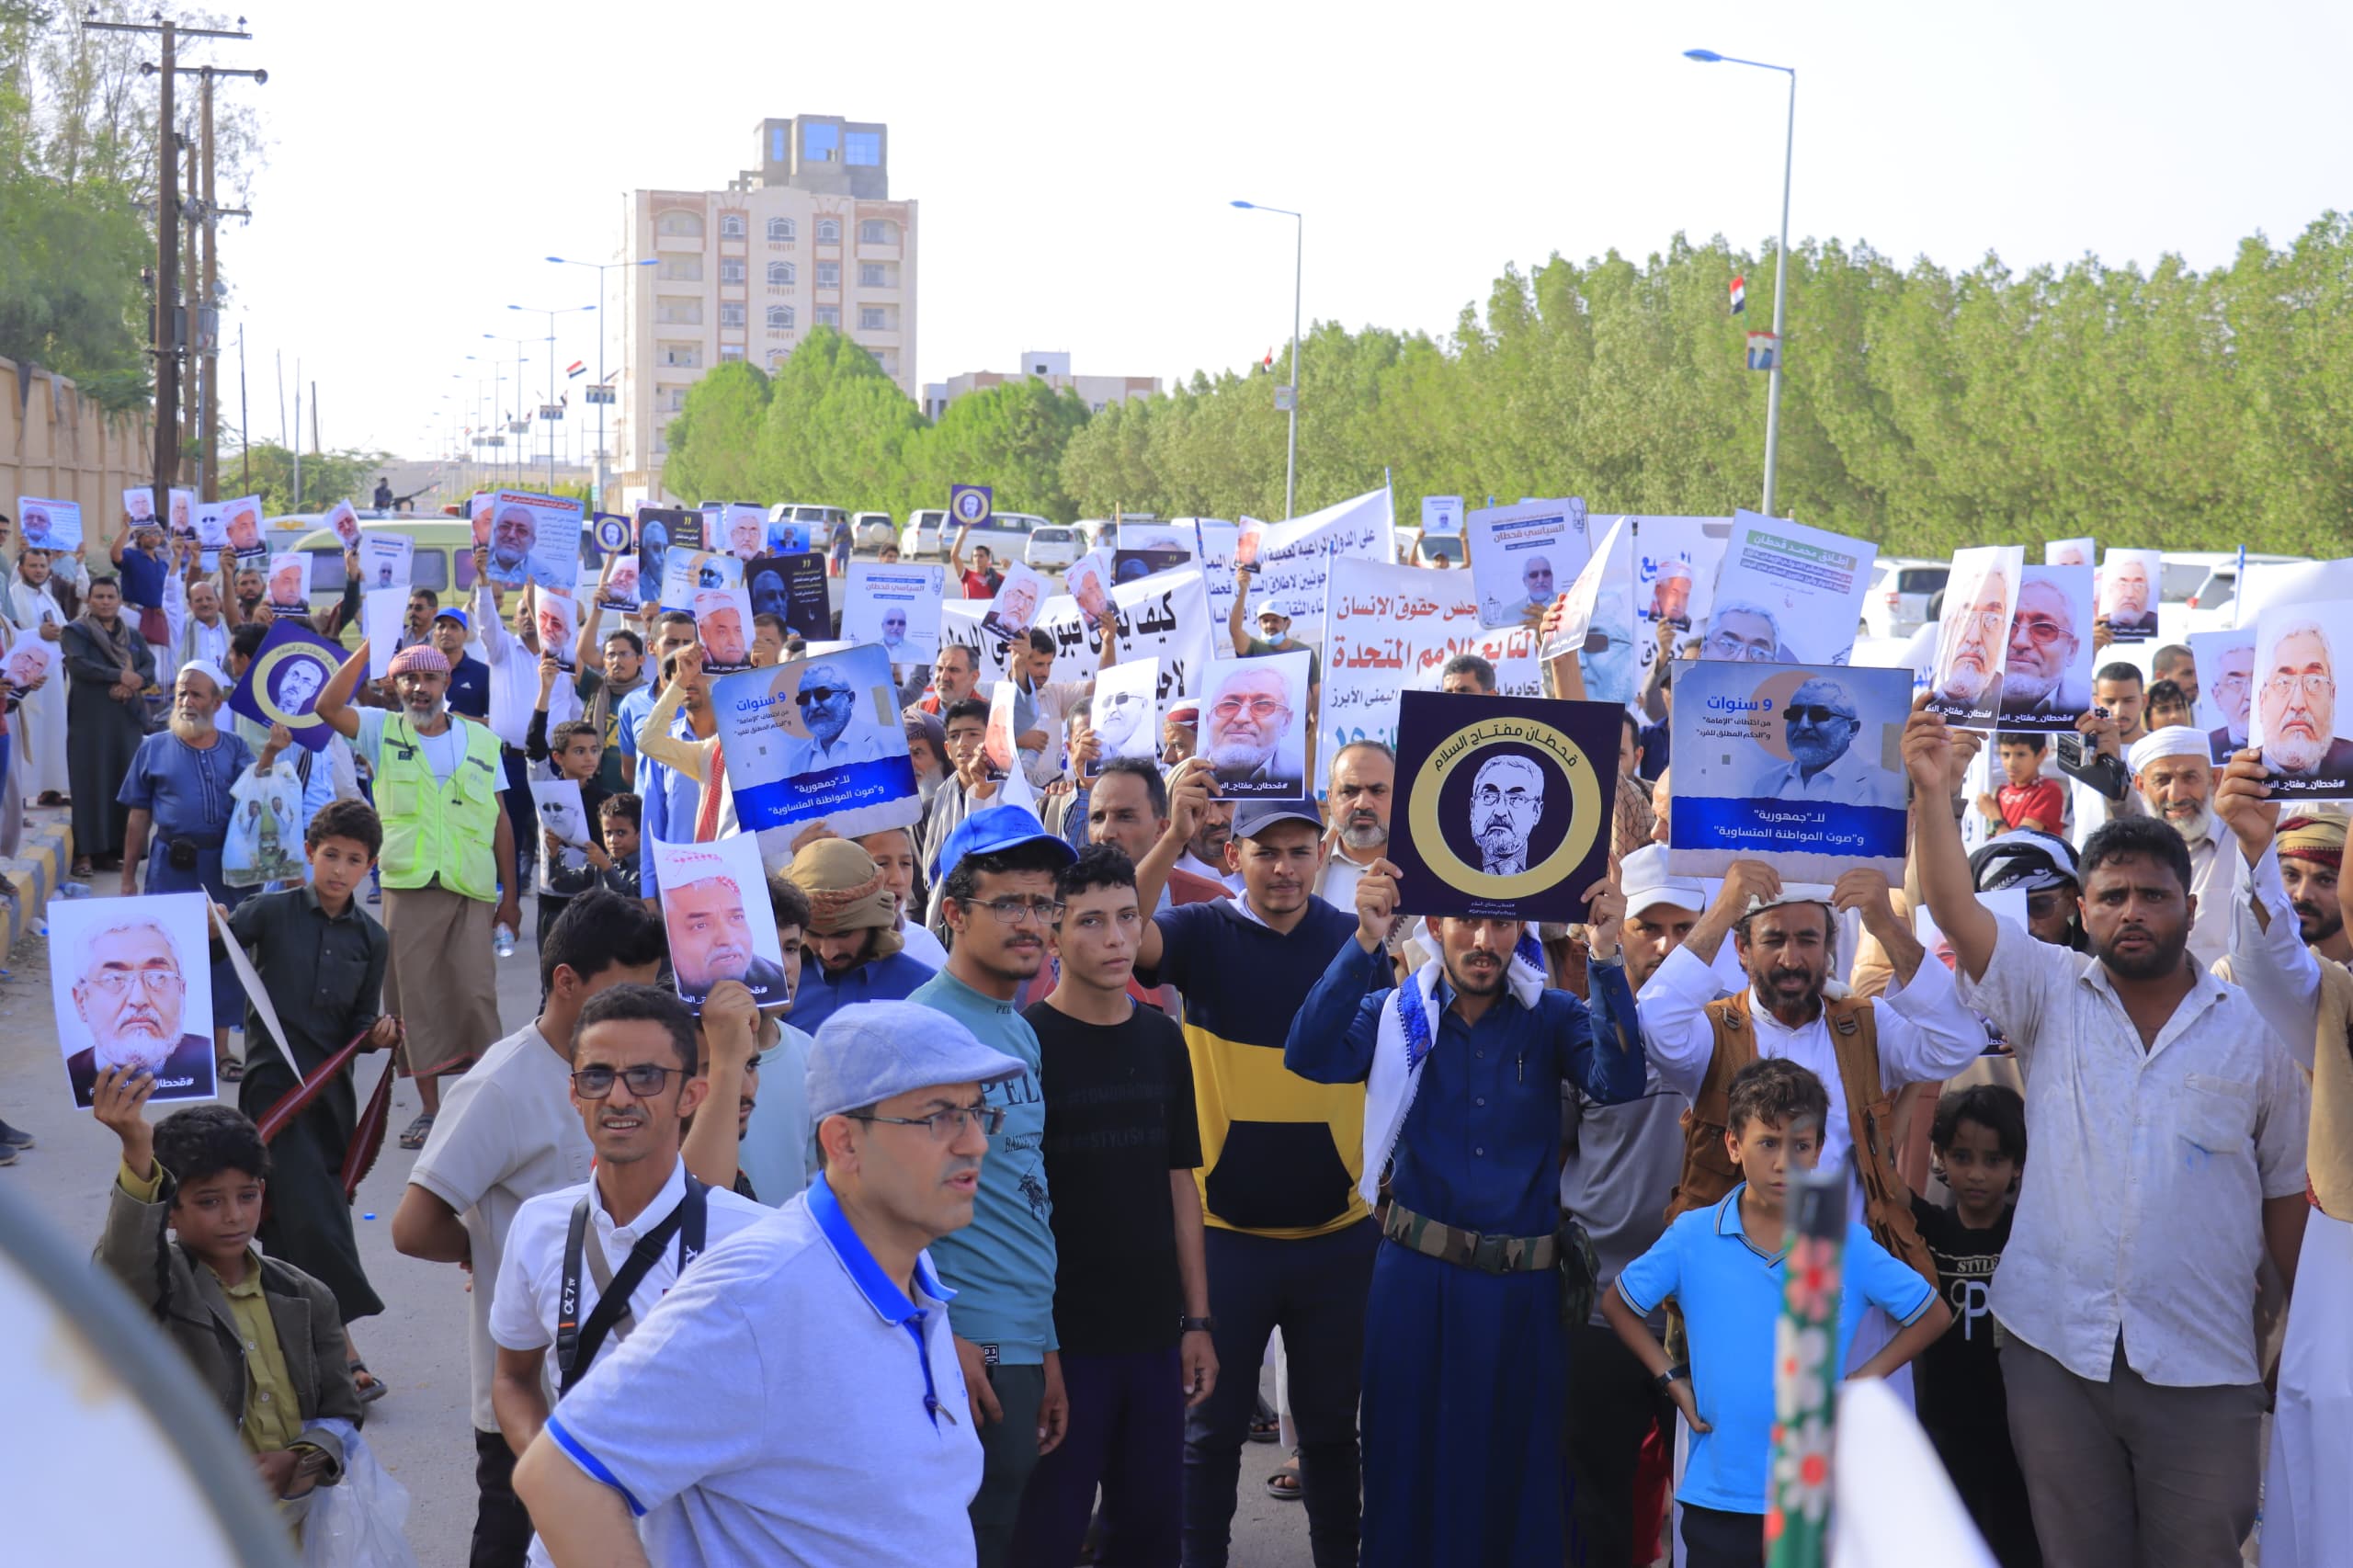 وقفة احتجاجية لأبناء أمانة العاصمة تطالب بسرعة الإفراج عن السياسي "محمد قحطان"